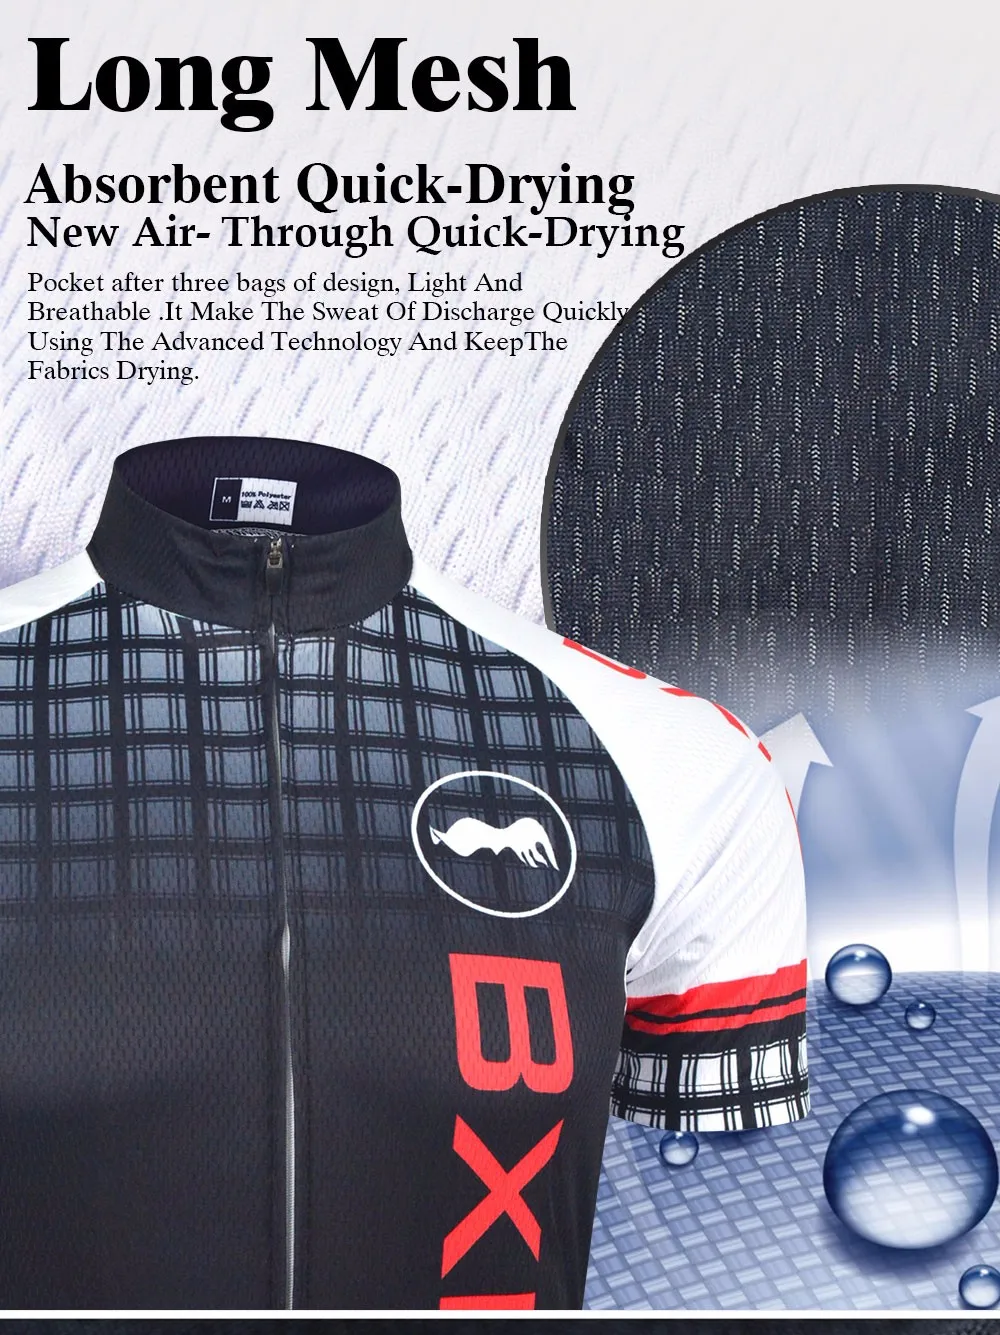 Bxio Прохладный Велонаборы дышащий Открытый Для мужчин Pro цикла Майки Рубашка с короткими рукавами Велосипедный Спорт одежда Дышащие quipacion